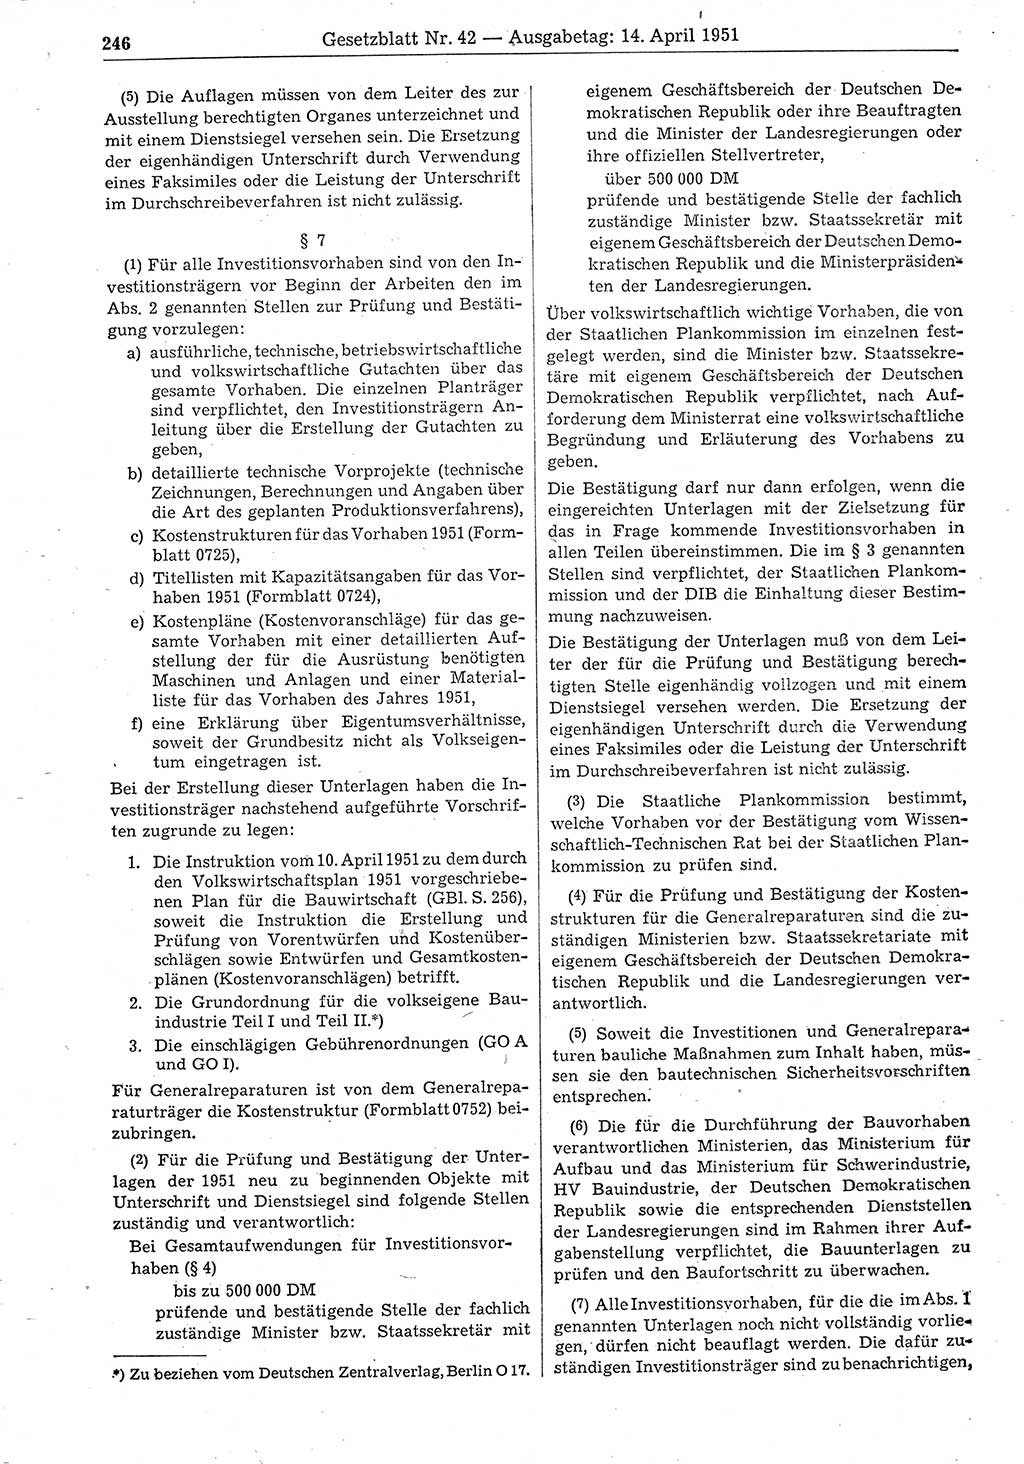 Gesetzblatt (GBl.) der Deutschen Demokratischen Republik (DDR) 1951, Seite 246 (GBl. DDR 1951, S. 246)